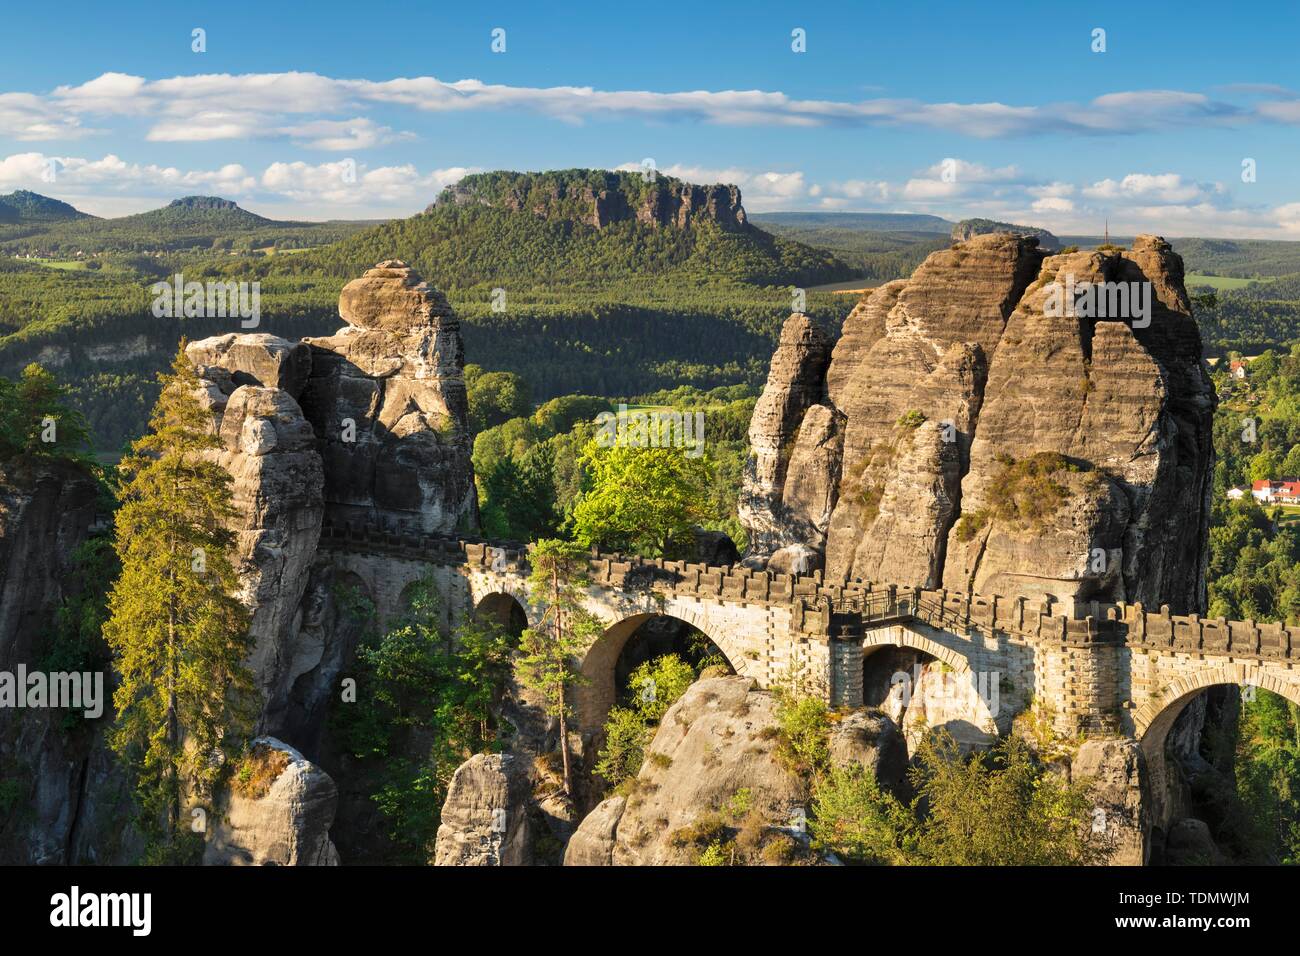 Vue sur le pont de la Bastei Lilienstein, des montagnes de grès de l'Elbe, la Suisse Saxonne Parc National, Saxe, Allemagne Banque D'Images